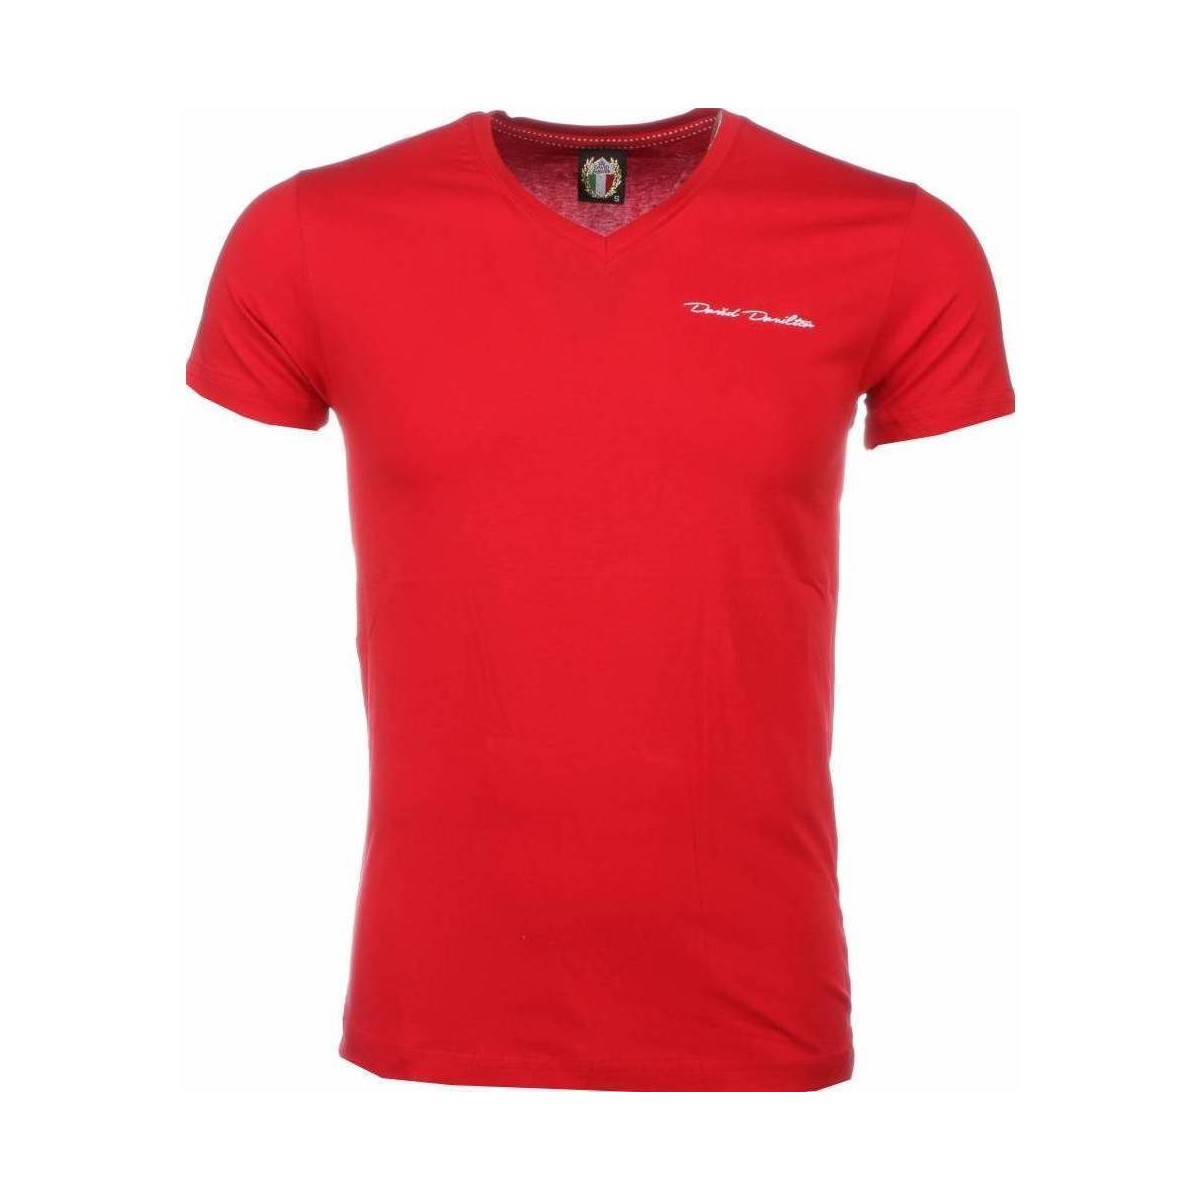 tekstylia Męskie T-shirty z krótkim rękawem David Copper 6694344 Czerwony